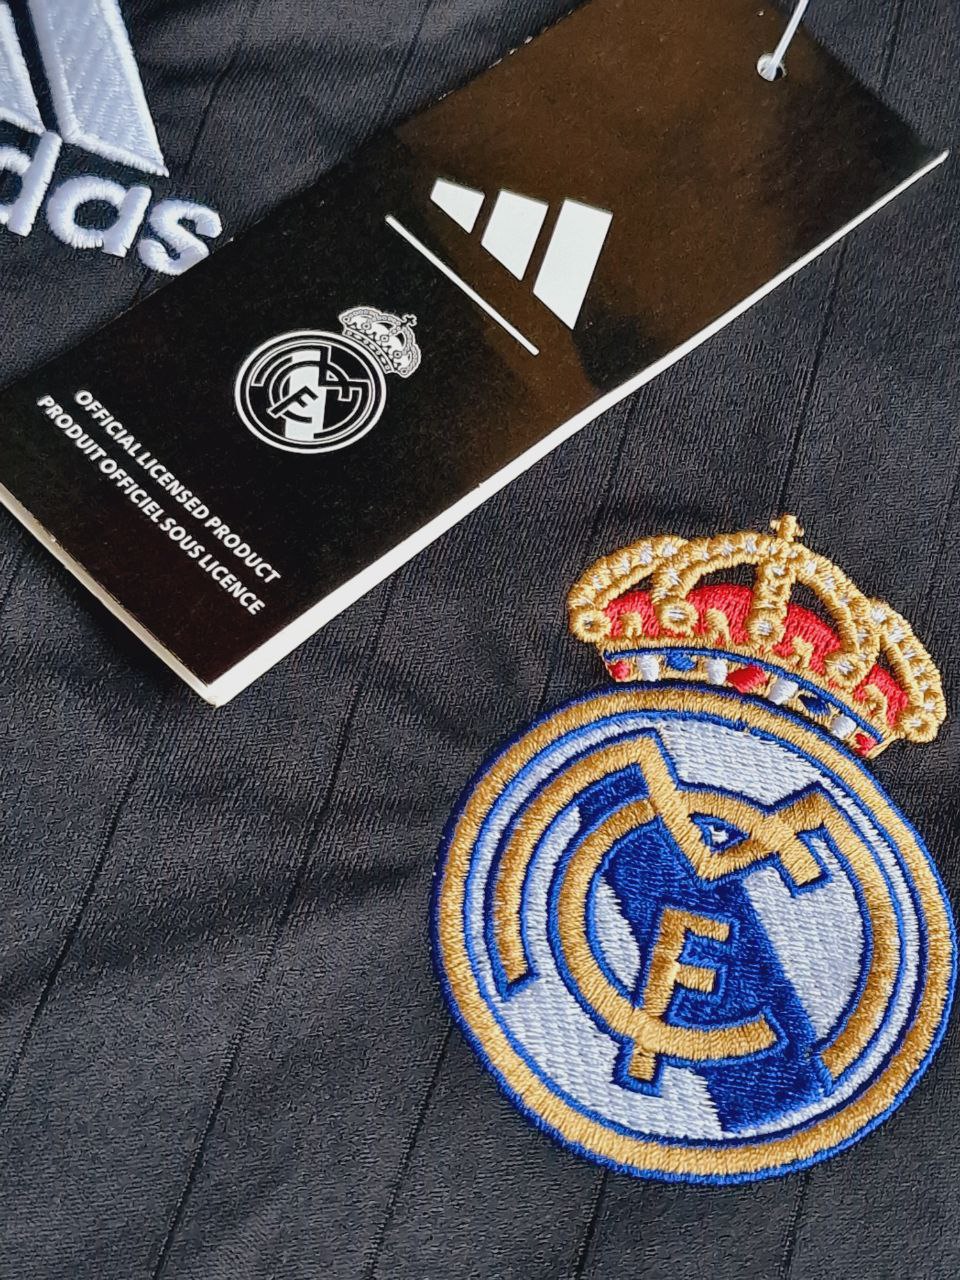 Ronaldo Nazario Real Madrid Black Retro Long Sleeve Football Jersey